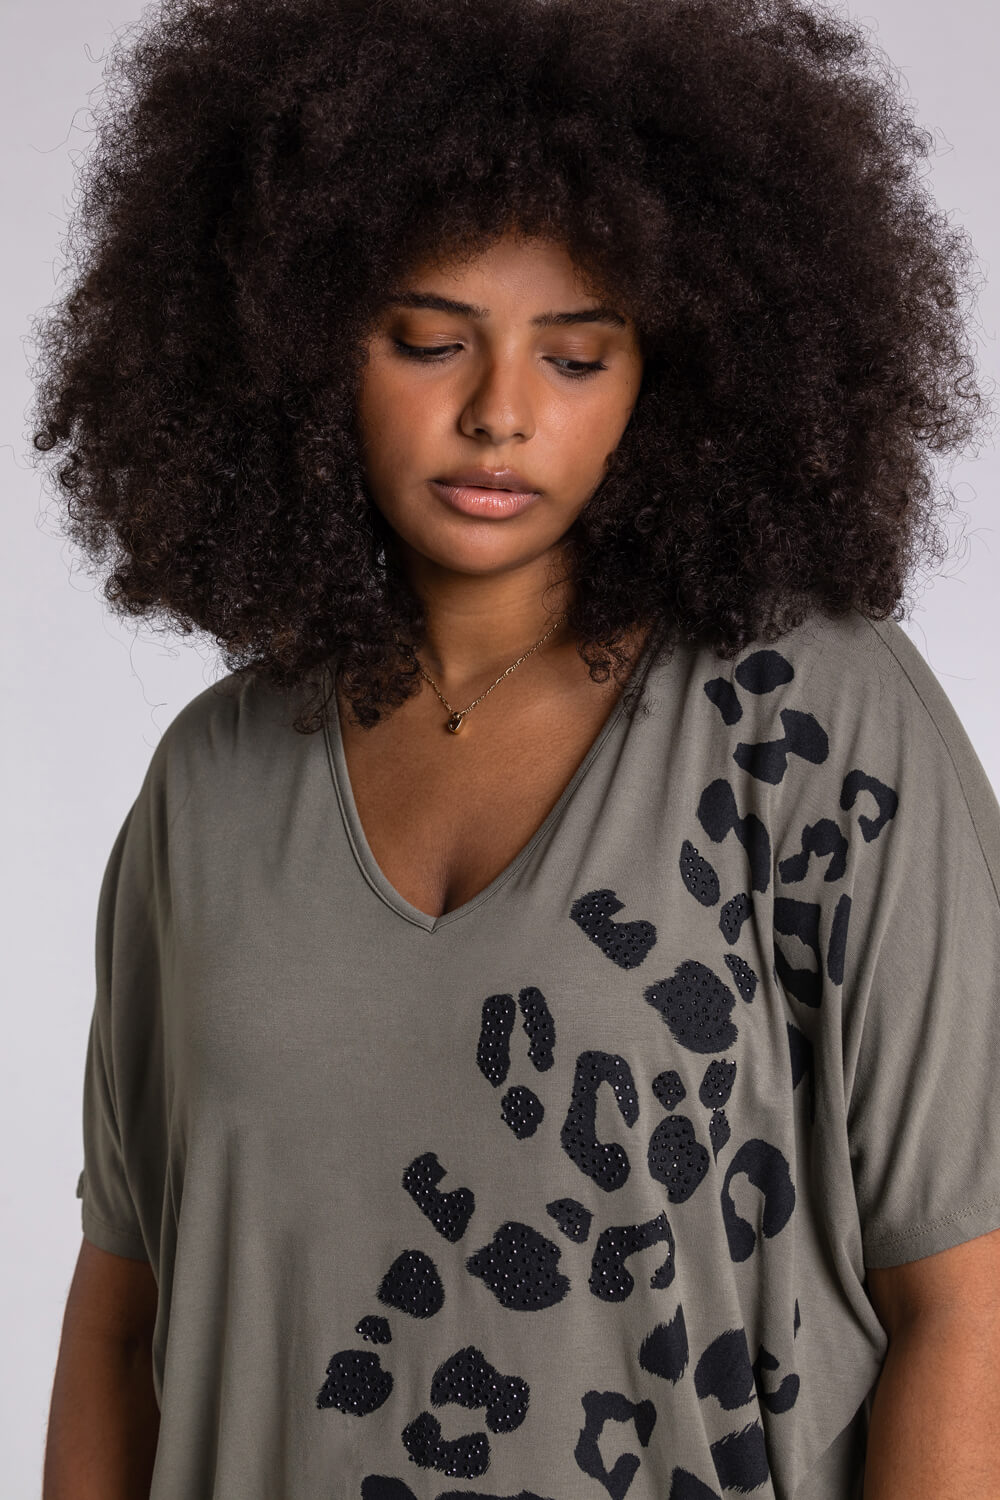 KHAKI Curve Embellished Animal Print T-Shirt, Image 4 of 4